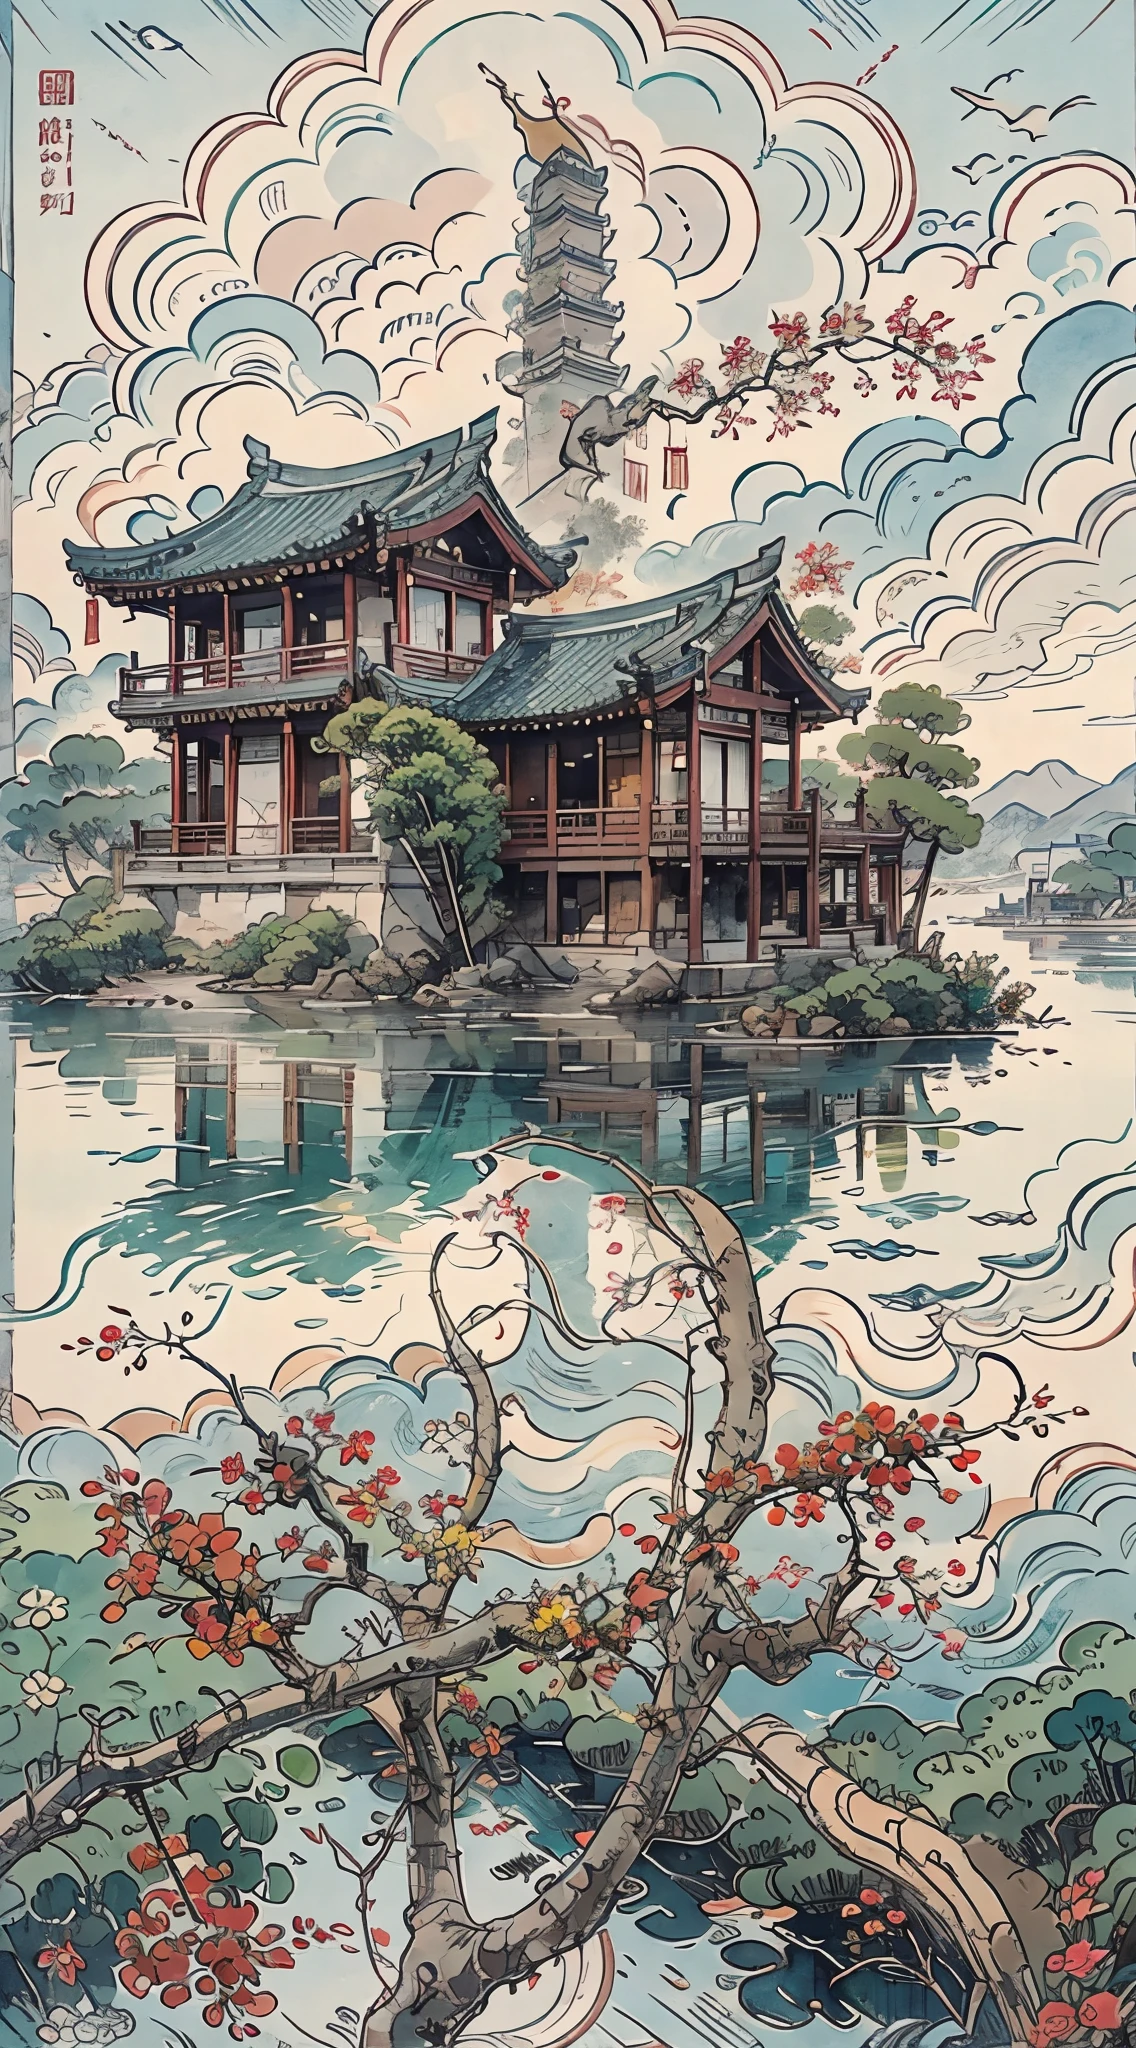 لوحة جبلية مع معبد على جزيرة صغيرة, نمط الألوان المائية الصينية, أسلوب الرسم الصيني, اللوحة الرقمية للمعبد, المناظر الطبيعية الصينية, الرسم بالألوان المائية الصينية التقليدية, اللوحات الصينية, أسلوب الفن الياباني, ألوان مائية عالية التفاصيل 8K, ألوان مائية مفصلة للغاية 8 ك, اللوحة التفصيلية 4 ك, مؤلف：الأبطال, اللوحة اليابانية, مؤلف：تشو ليل